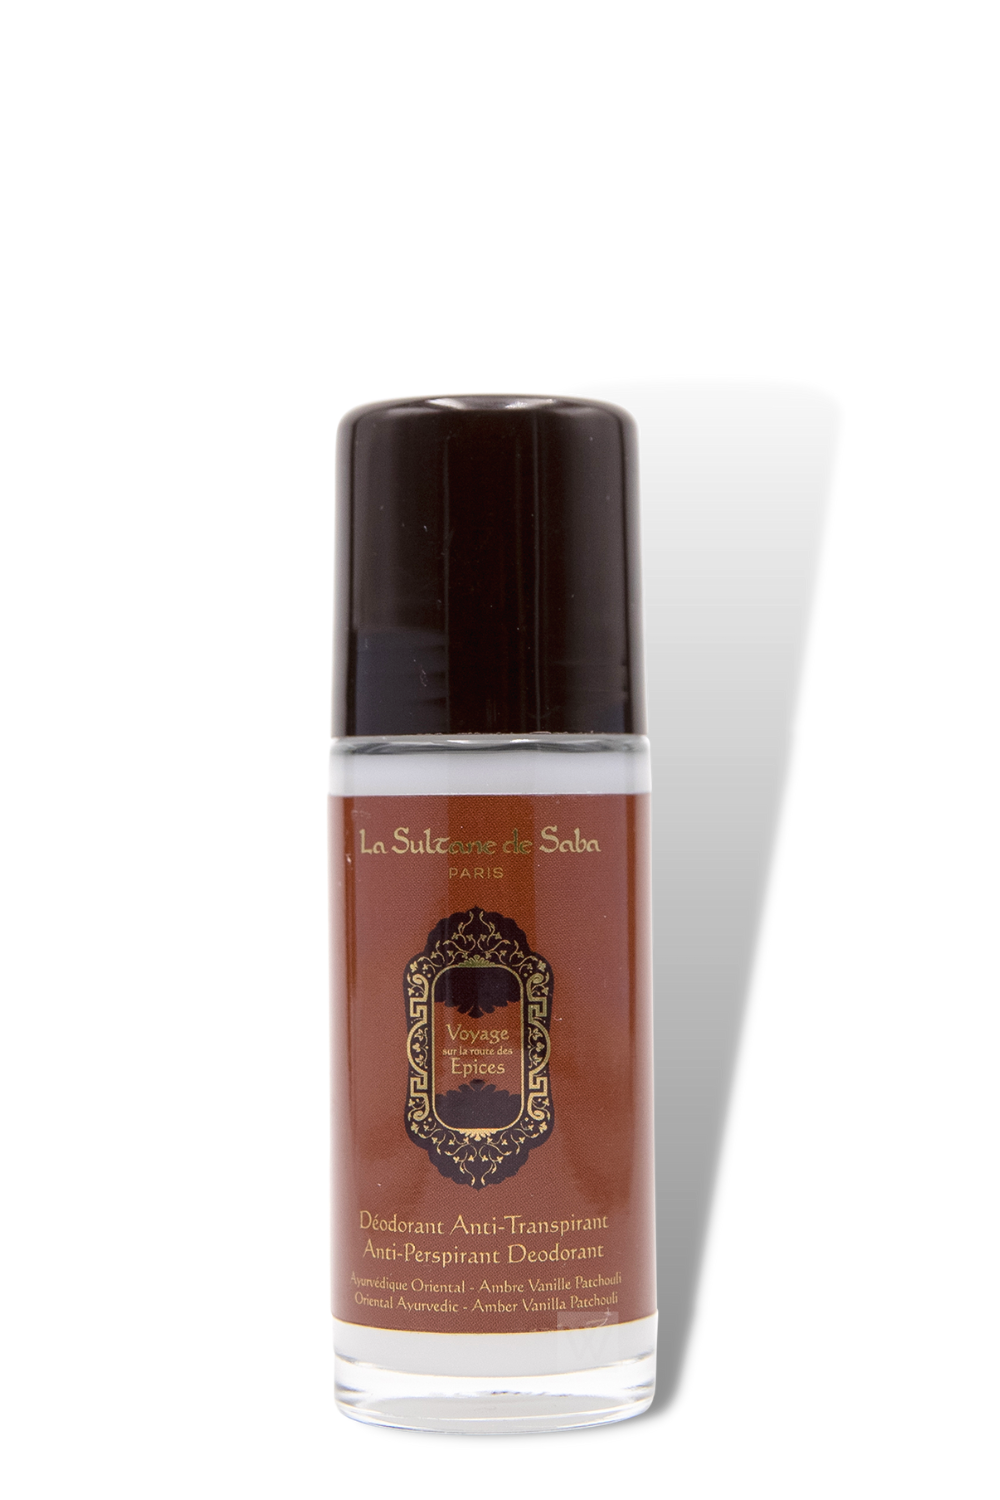 La Sultane de Saba - Body Lotion Ayurvedic Travel Spices - 200ml